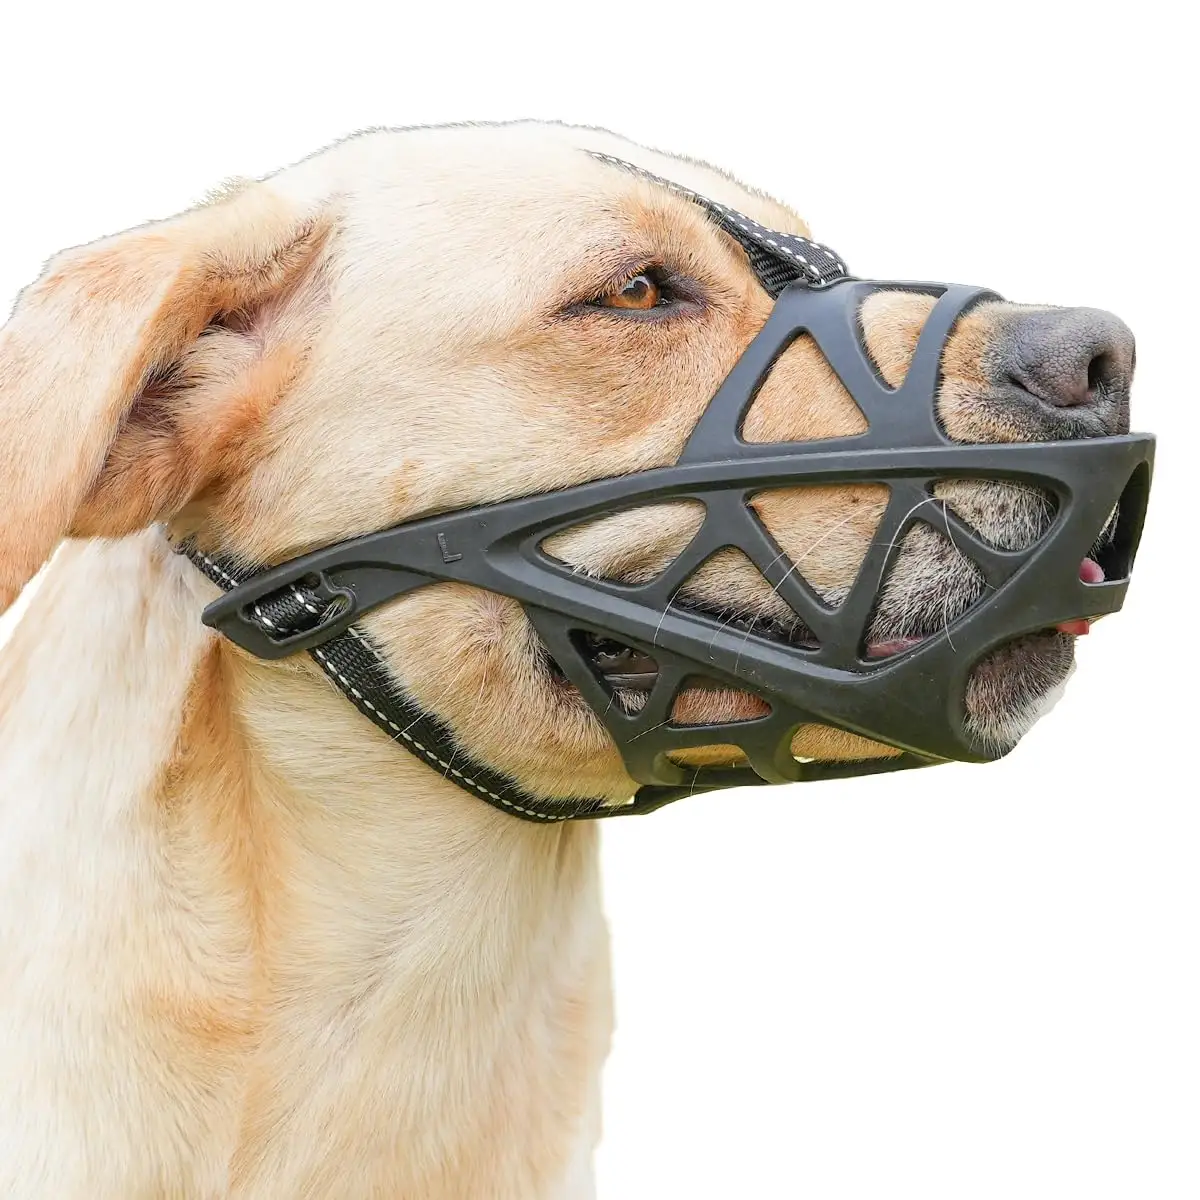 Museruola cane morbido musi traspirante per il cane con cinghie regolabili per evitare mordere masticazione e leccare il cane copertura della bocca